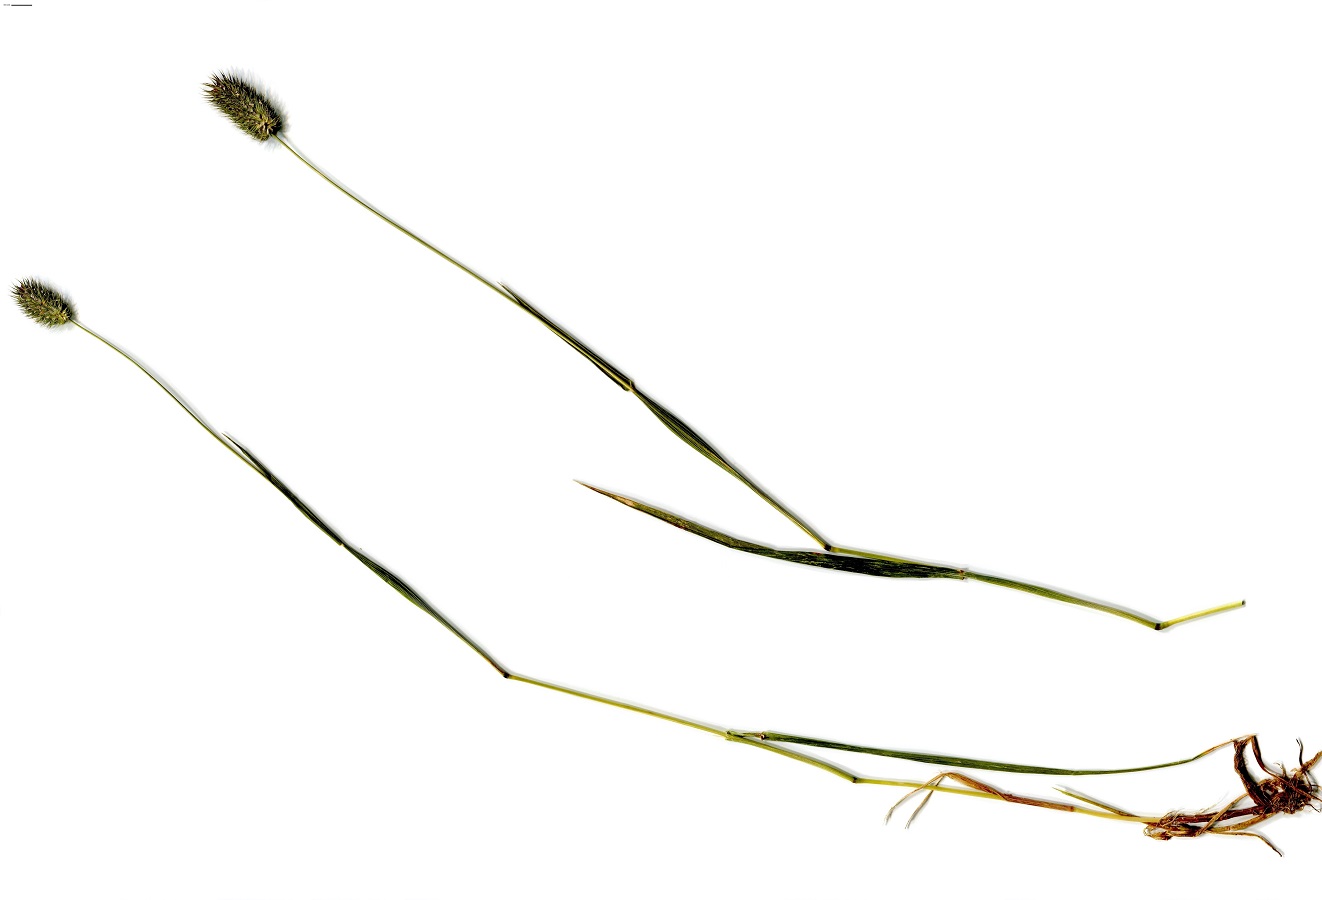 Phleum alpinum (Poaceae)